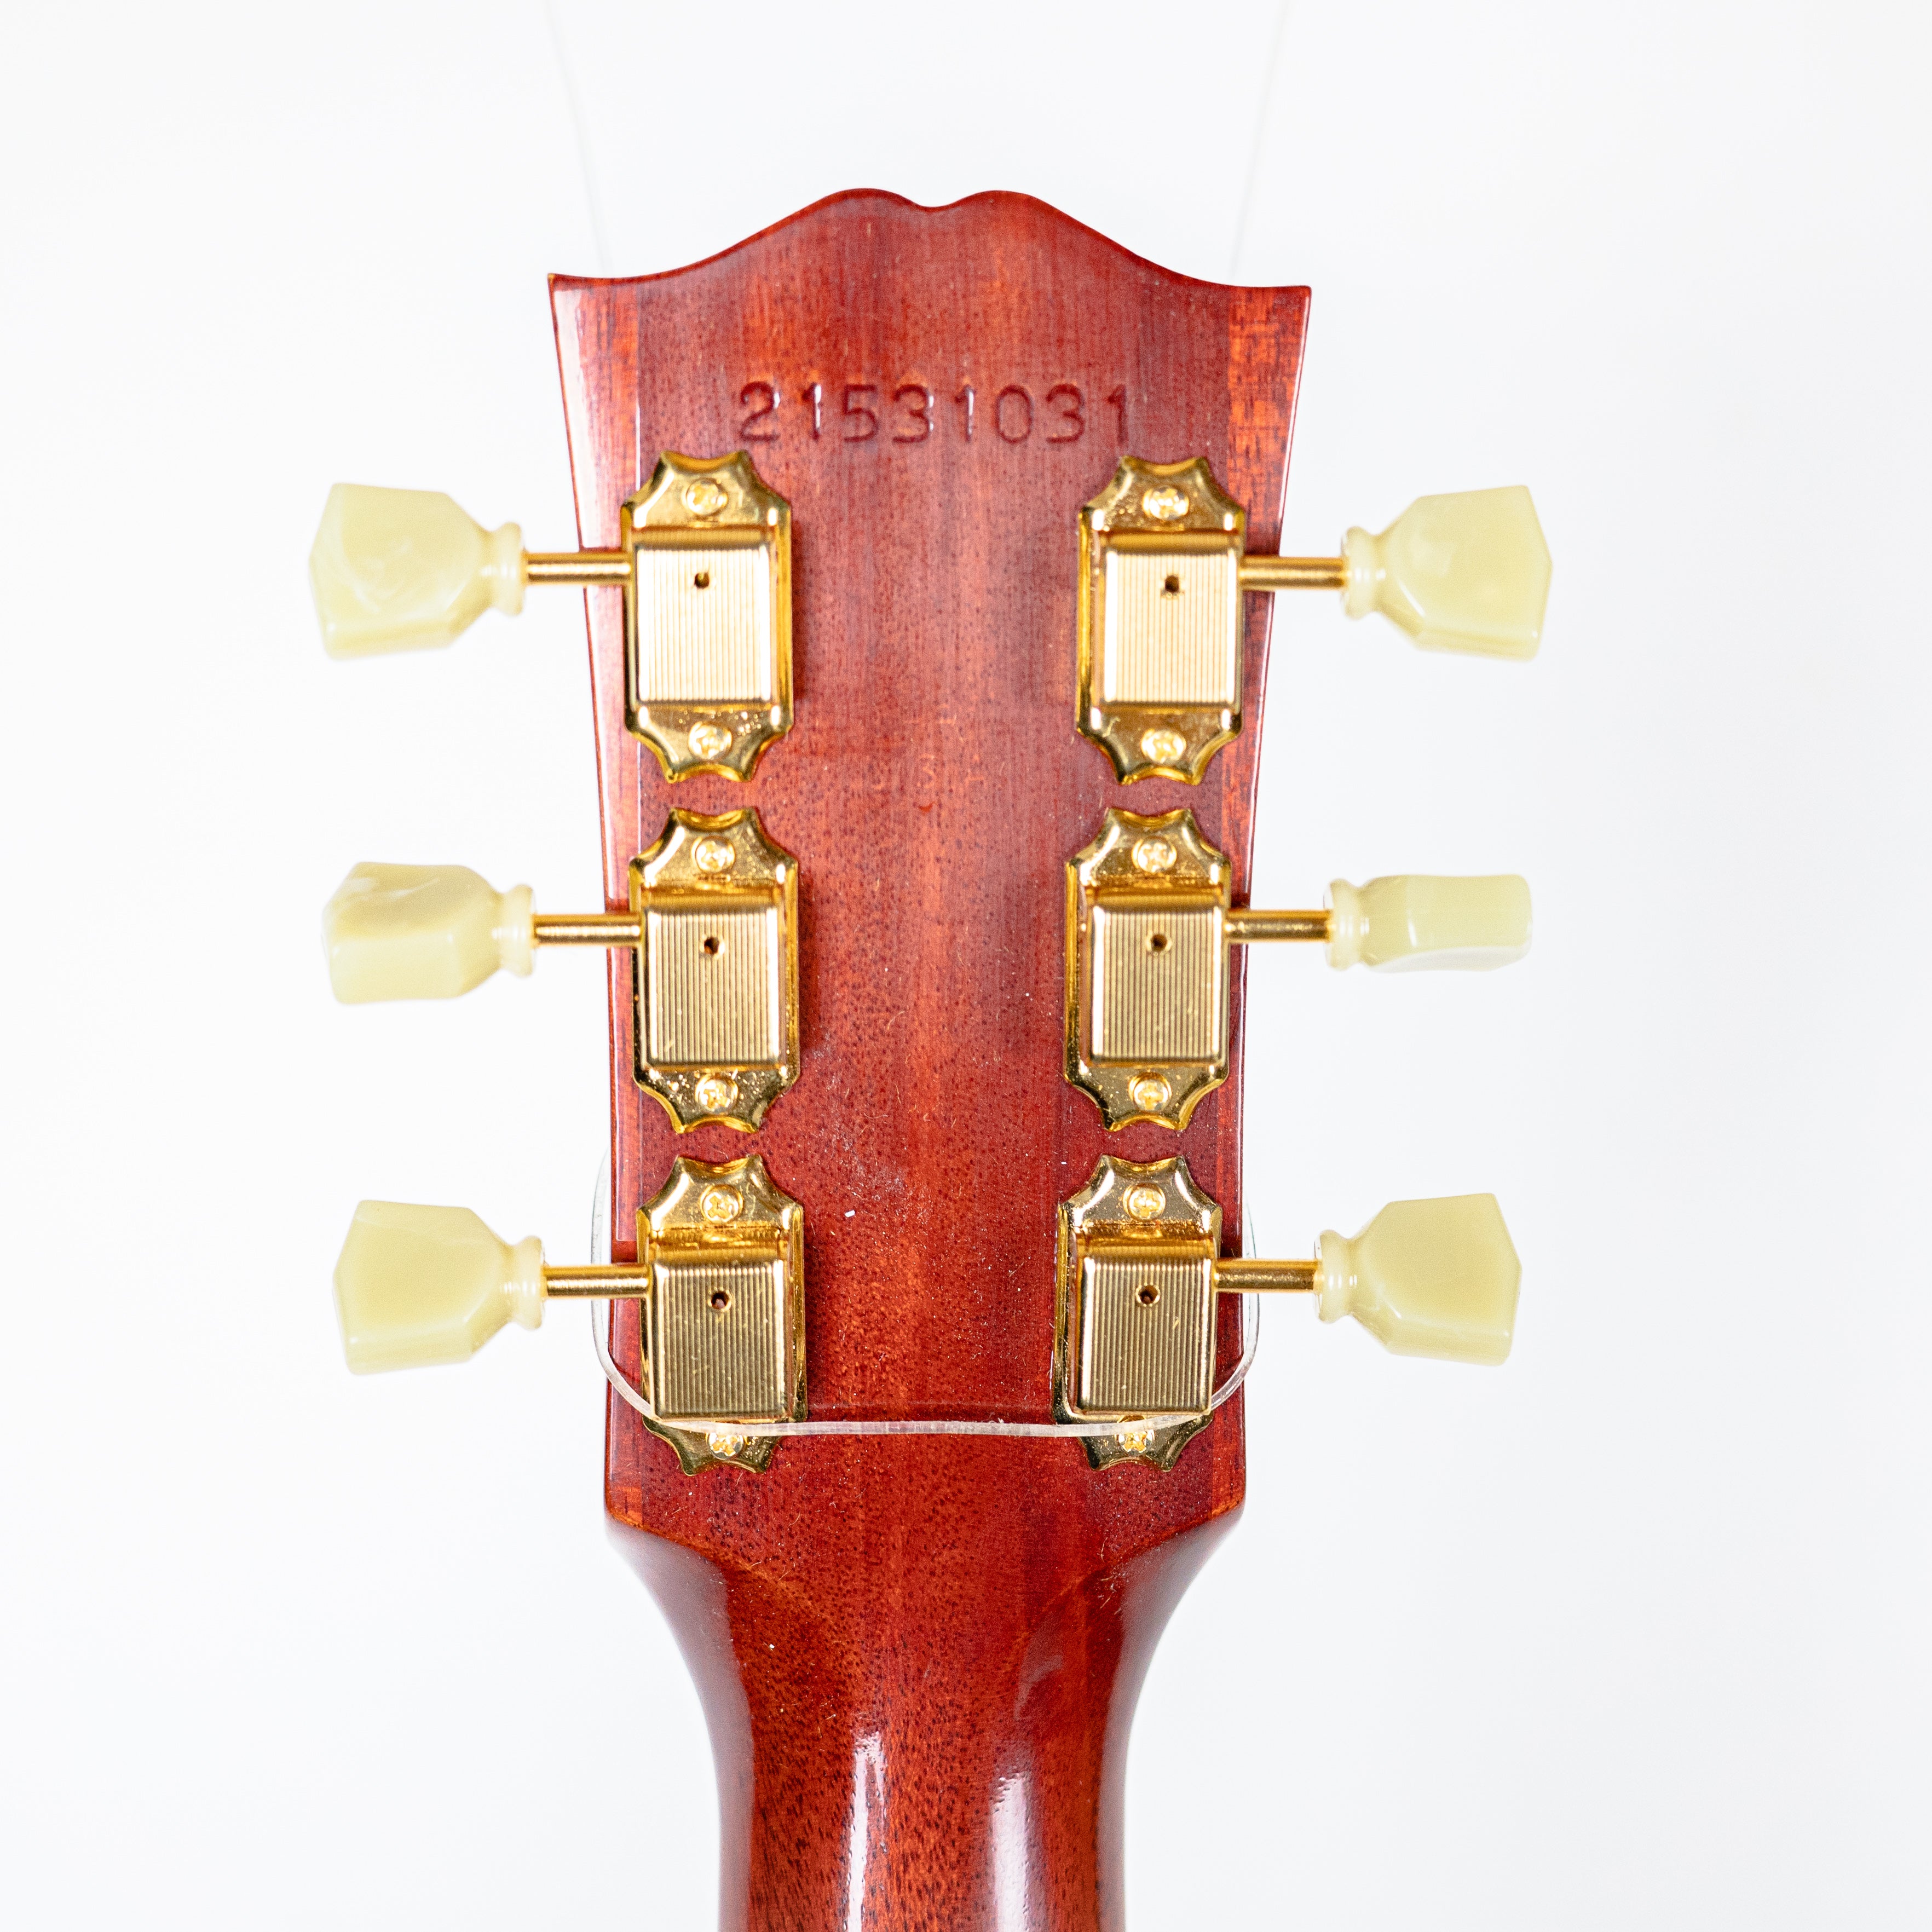 Gibson 1960 Hummingbird Heritage Cherry Sunburst